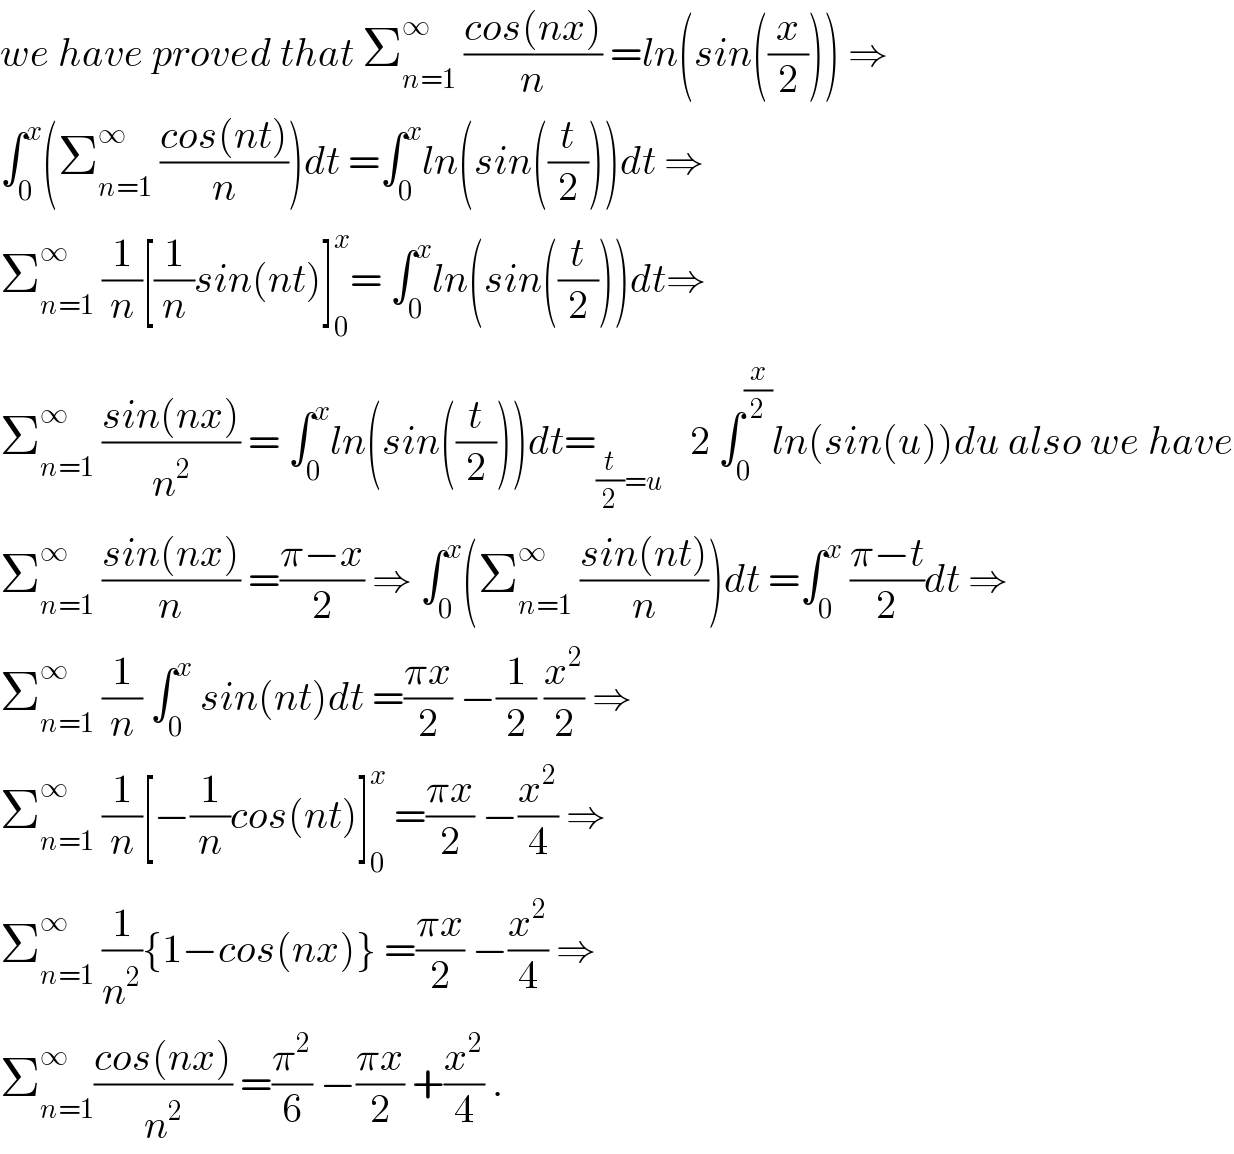 we have proved that Σ_(n=1) ^∞  ((cos(nx))/n) =ln(sin((x/2))) ⇒  ∫_0 ^x (Σ_(n=1) ^∞  ((cos(nt))/n))dt =∫_0 ^x ln(sin((t/2)))dt ⇒  Σ_(n=1) ^∞  (1/n)[(1/n)sin(nt)]_0 ^x = ∫_0 ^x ln(sin((t/2)))dt⇒  Σ_(n=1) ^∞  ((sin(nx))/n^2 ) = ∫_0 ^x ln(sin((t/2)))dt=_((t/2)=u )    2 ∫_0 ^(x/2) ln(sin(u))du also we have  Σ_(n=1) ^∞  ((sin(nx))/n) =((π−x)/2) ⇒ ∫_0 ^x (Σ_(n=1) ^∞  ((sin(nt))/n))dt =∫_0 ^x  ((π−t)/2)dt ⇒  Σ_(n=1) ^∞  (1/n) ∫_0 ^x  sin(nt)dt =((πx)/2) −(1/2) (x^2 /2) ⇒  Σ_(n=1) ^∞  (1/n)[−(1/n)cos(nt)]_0 ^x  =((πx)/2) −(x^2 /4) ⇒  Σ_(n=1) ^∞  (1/n^2 ){1−cos(nx)} =((πx)/2) −(x^2 /4) ⇒  Σ_(n=1) ^∞ ((cos(nx))/n^2 ) =(π^2 /6) −((πx)/2) +(x^2 /4) .  